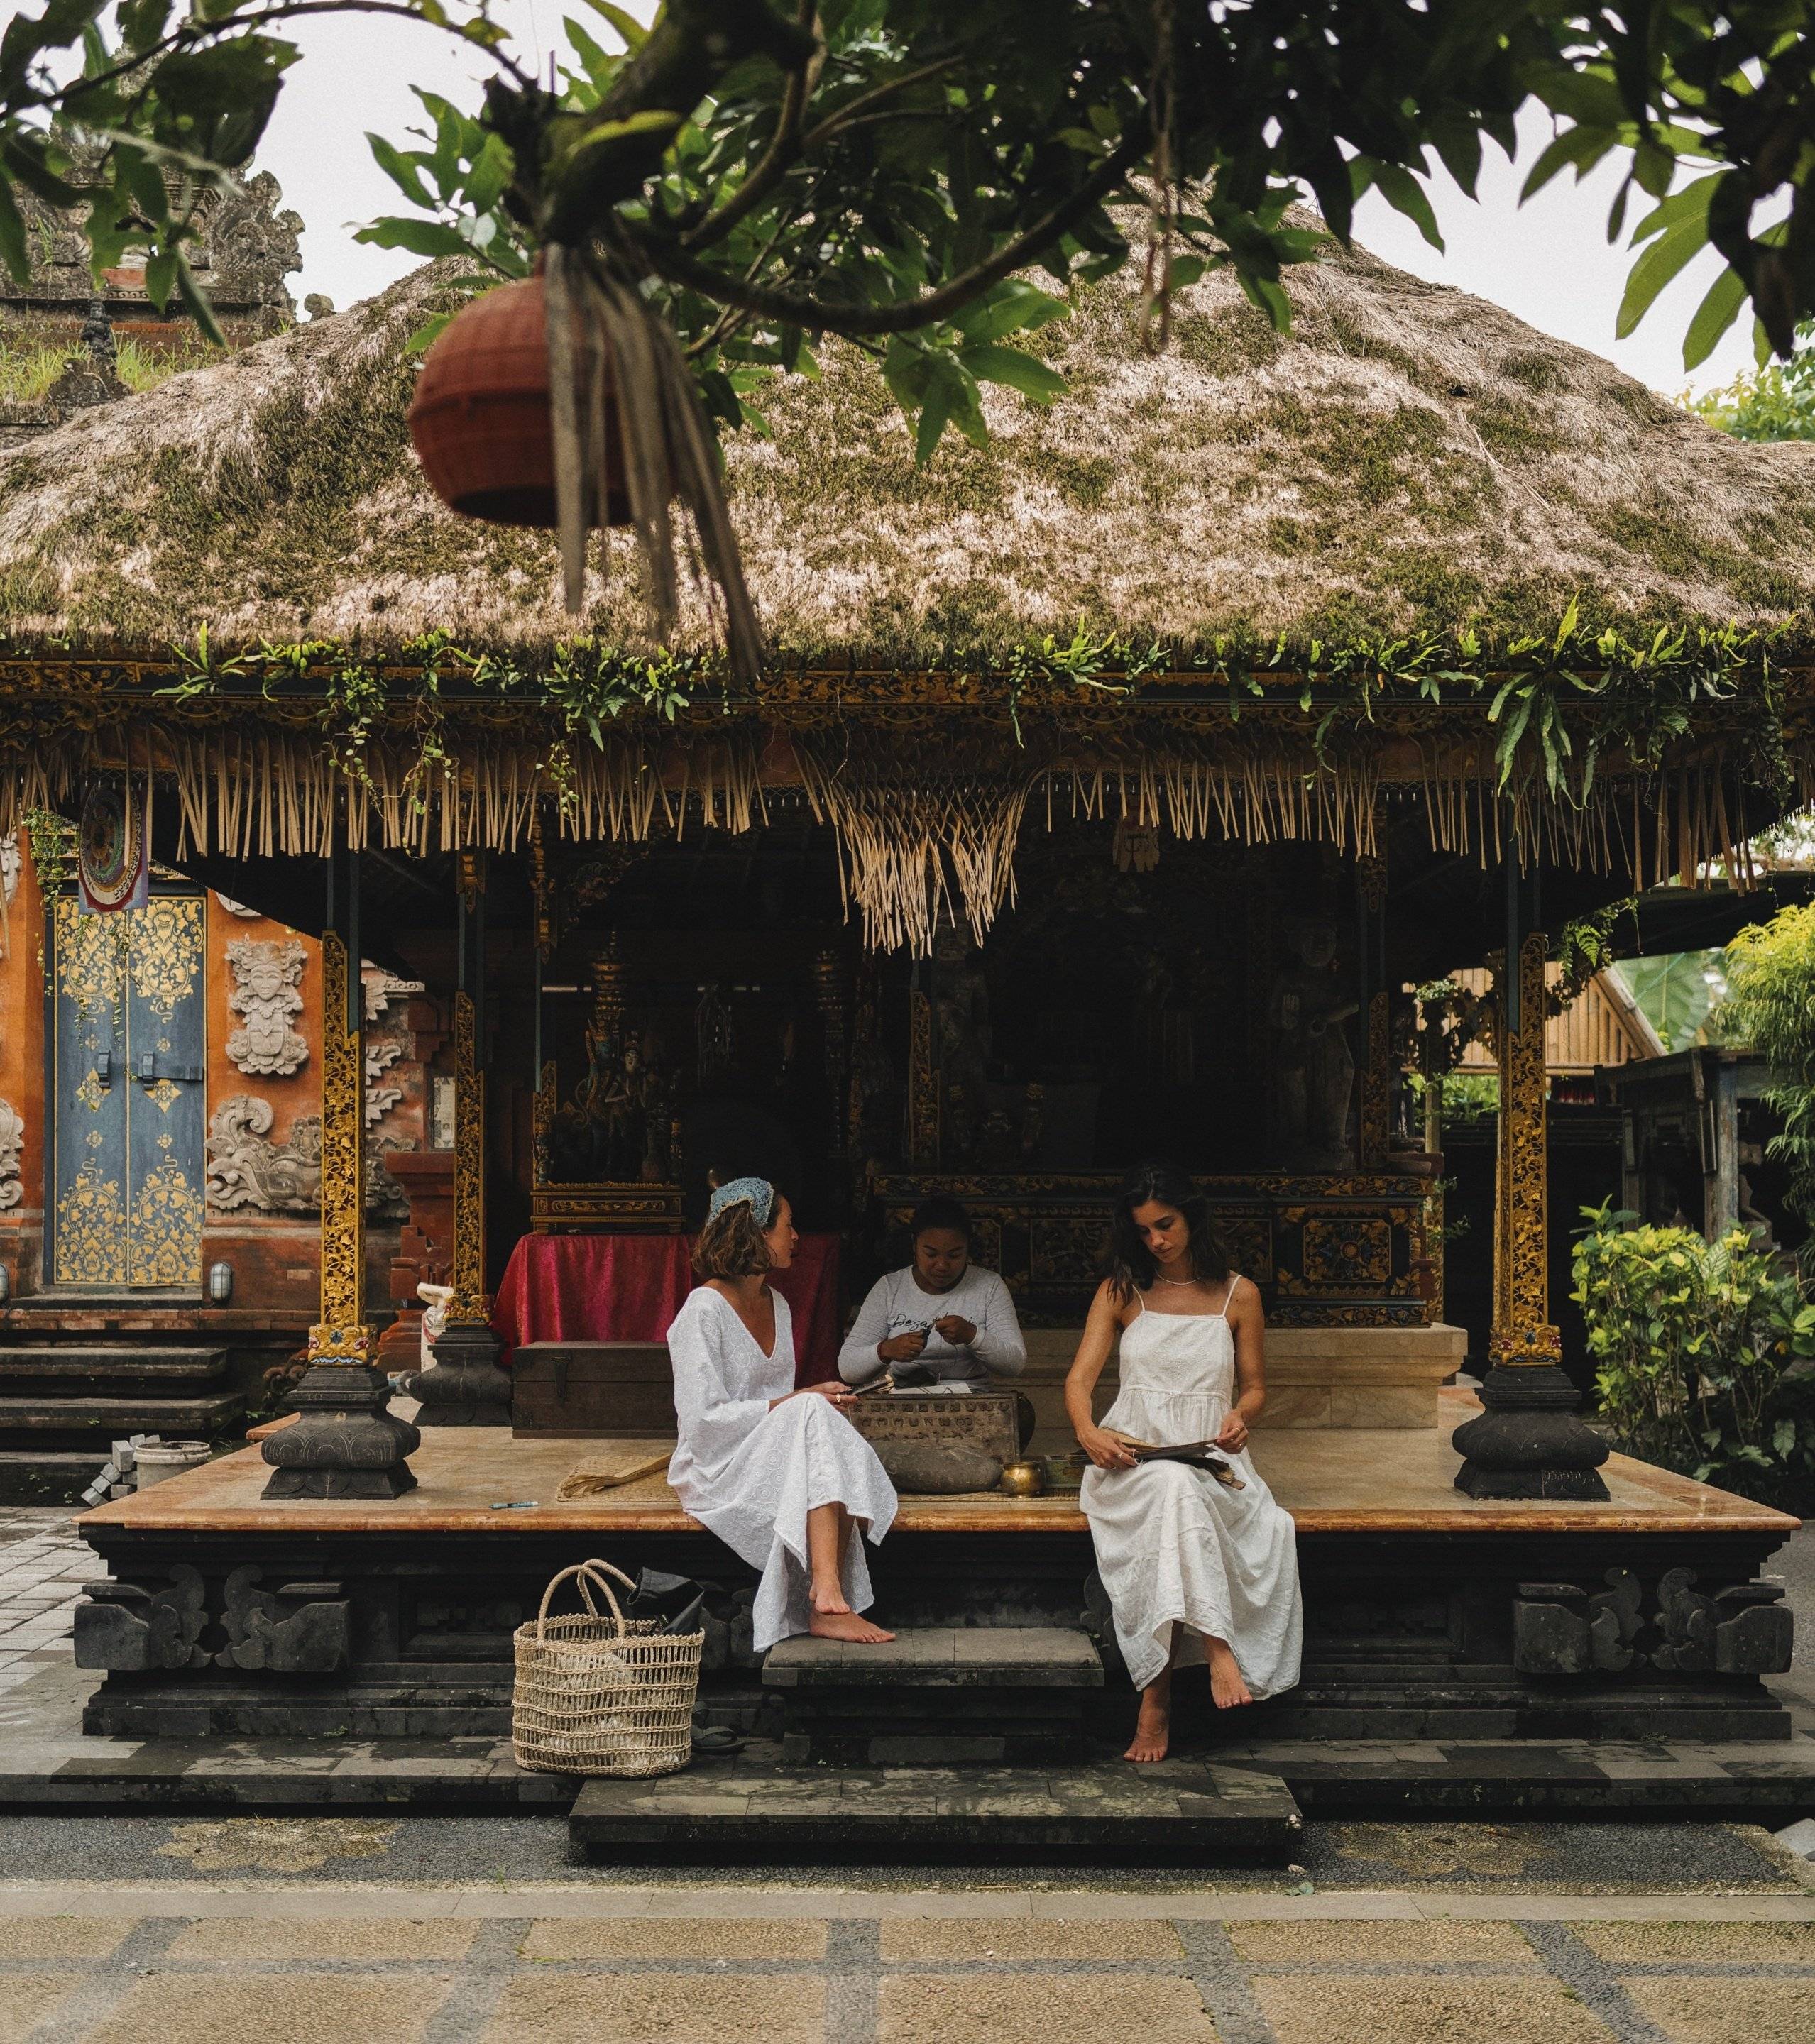 Rutas Secretas de Bali, Descubre sus Joyas Escondidas y su Cultura Única